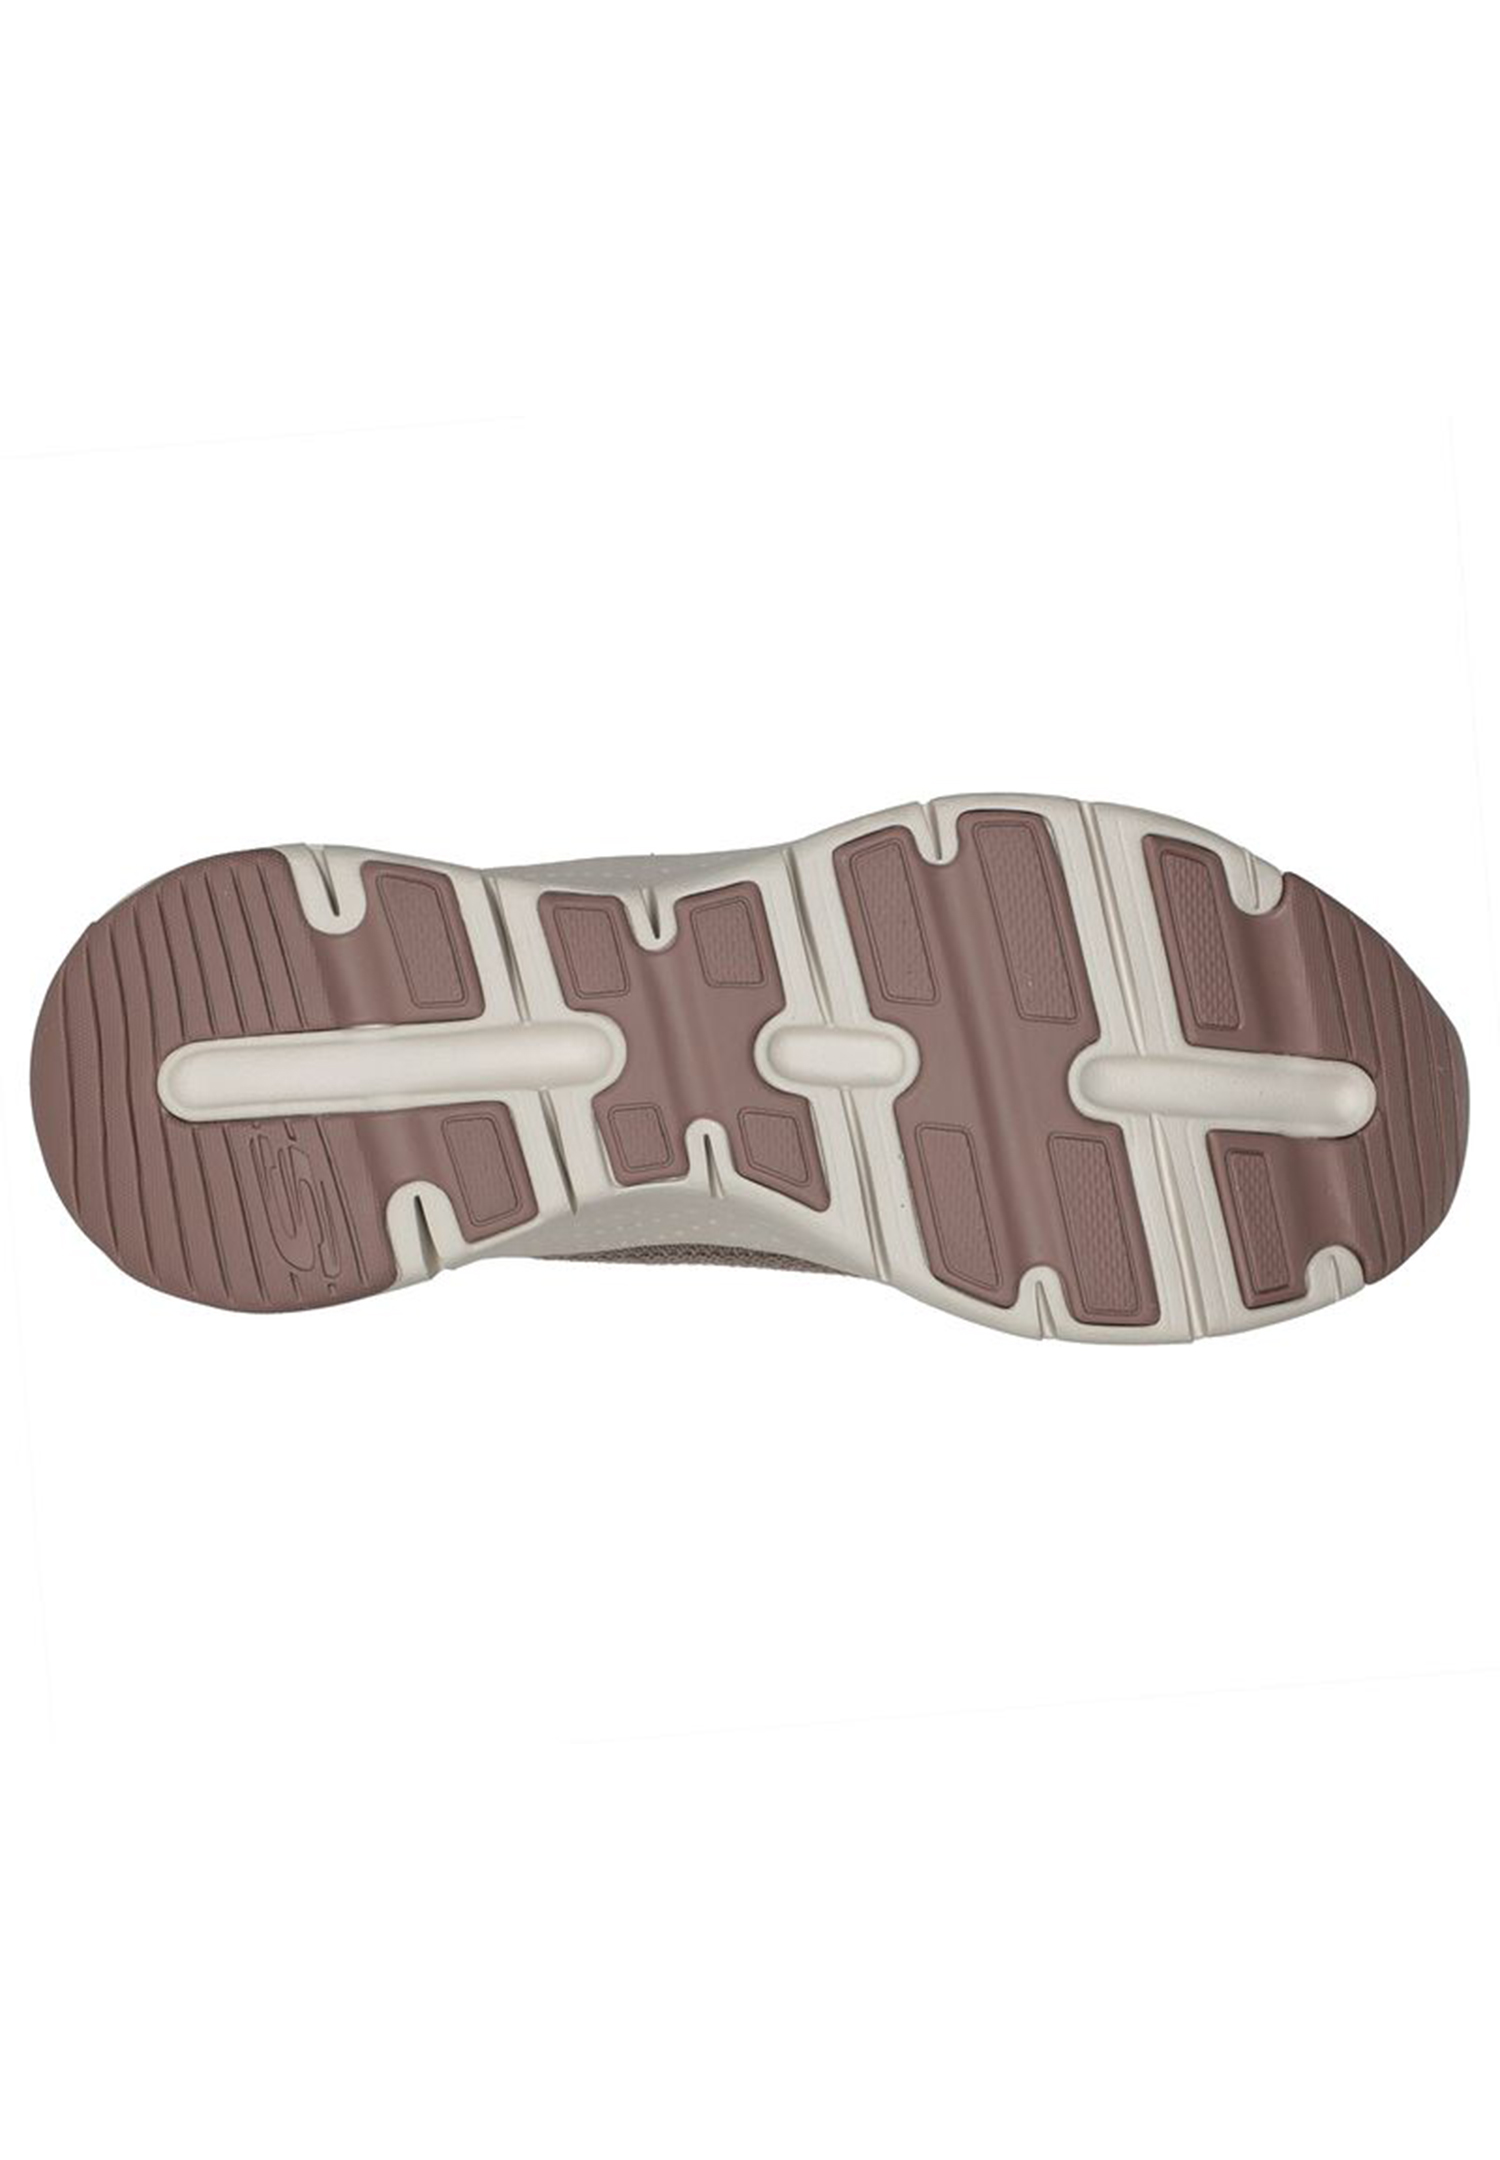 Skechers Arch Fit - COMFY WAVE Damen Sneaker 149414 beige